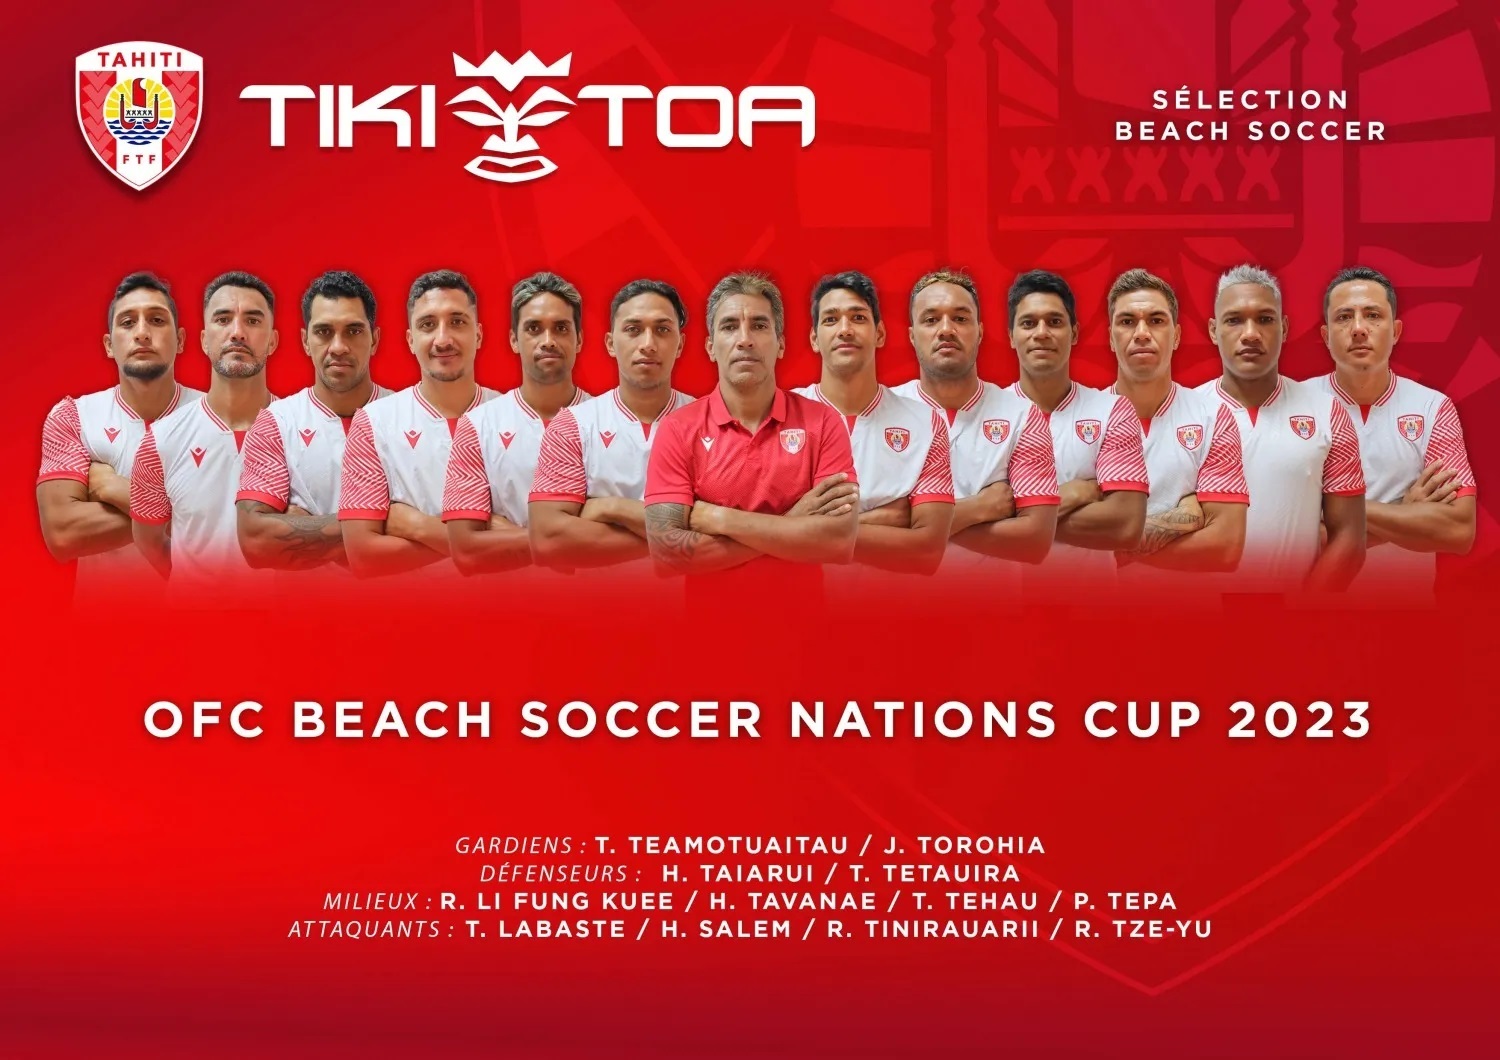 Les Tiki Toa entrent en scène à la Coupe des Nations d’Océanie